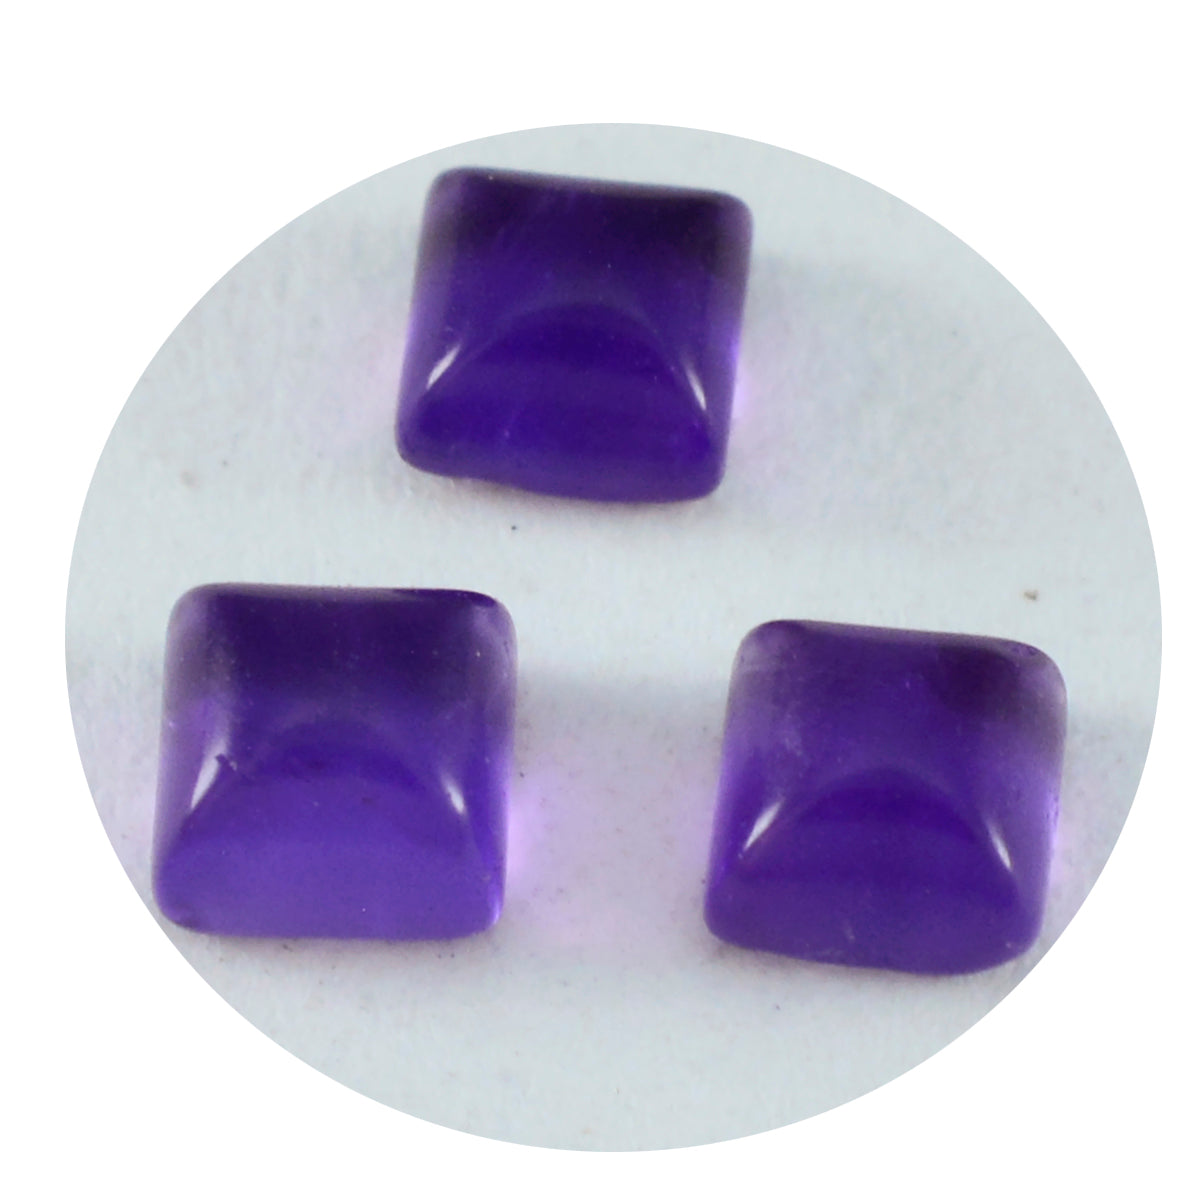 Riyogems 1 Stück lila Amethyst-Cabochon, 8 x 8 mm, quadratische Form, hübscher Qualitäts-Edelstein